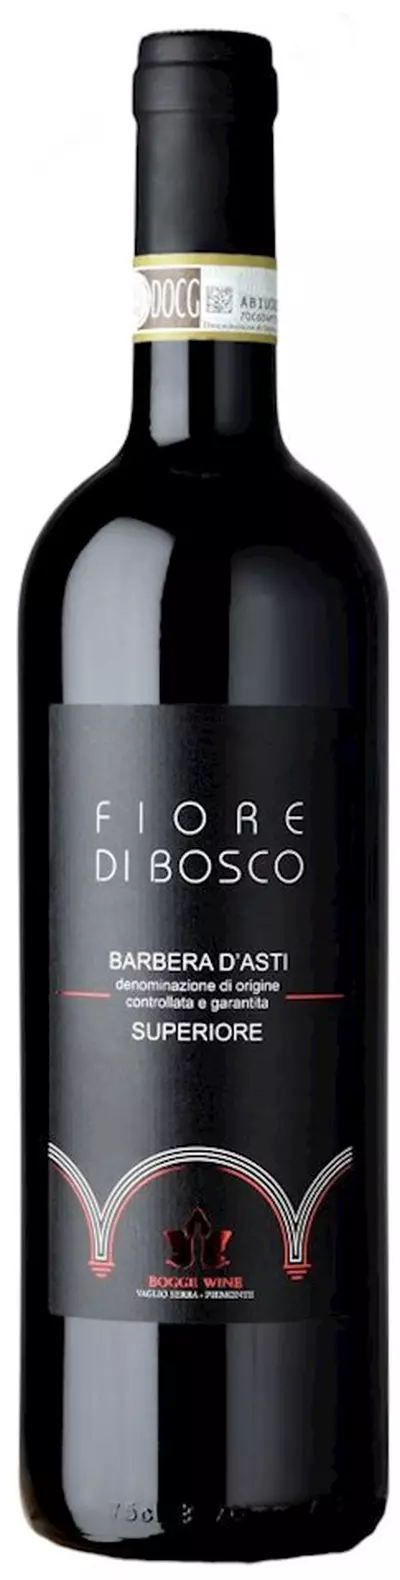 Fiore Di Bosco Barbera D'Asti sup. DOCG